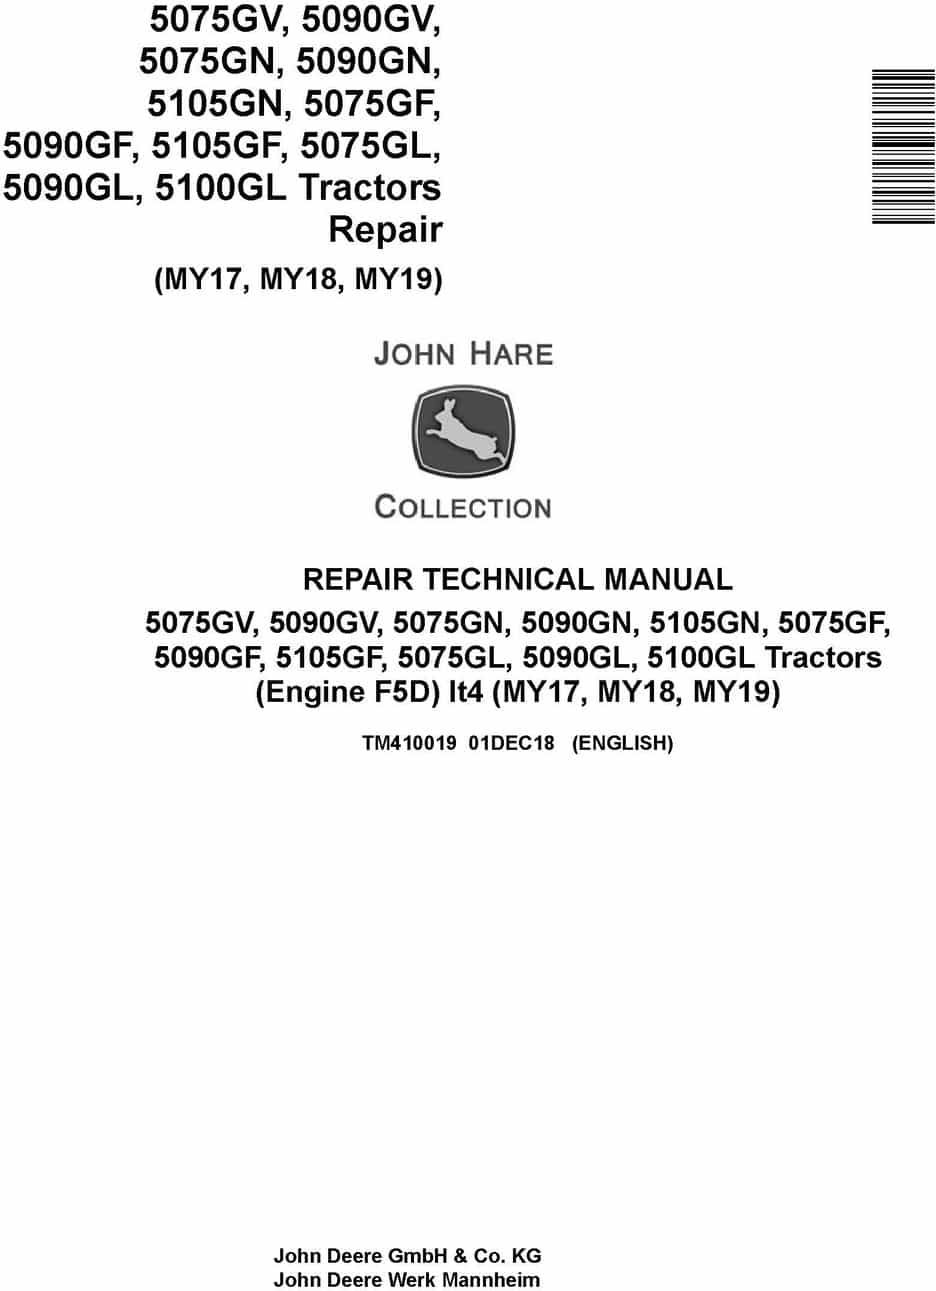 John Deere 5075G to 5105G Tractor Repair Technical Manual TM410019